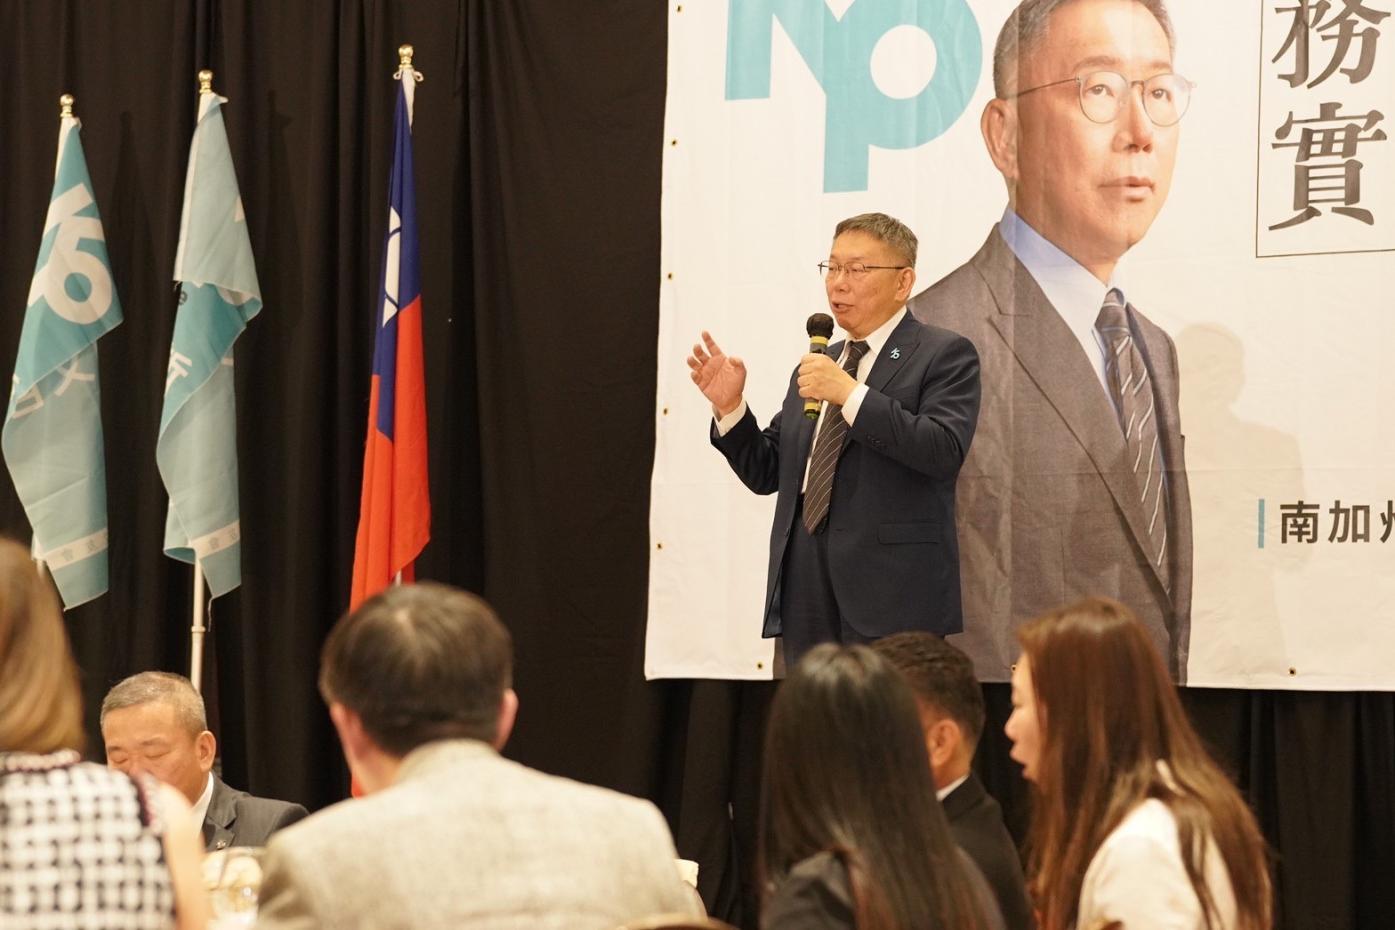 台灣民眾黨總統參選人柯文哲美西時間4日參加「南加州選哲之友會」成立大會。台灣民眾黨提供